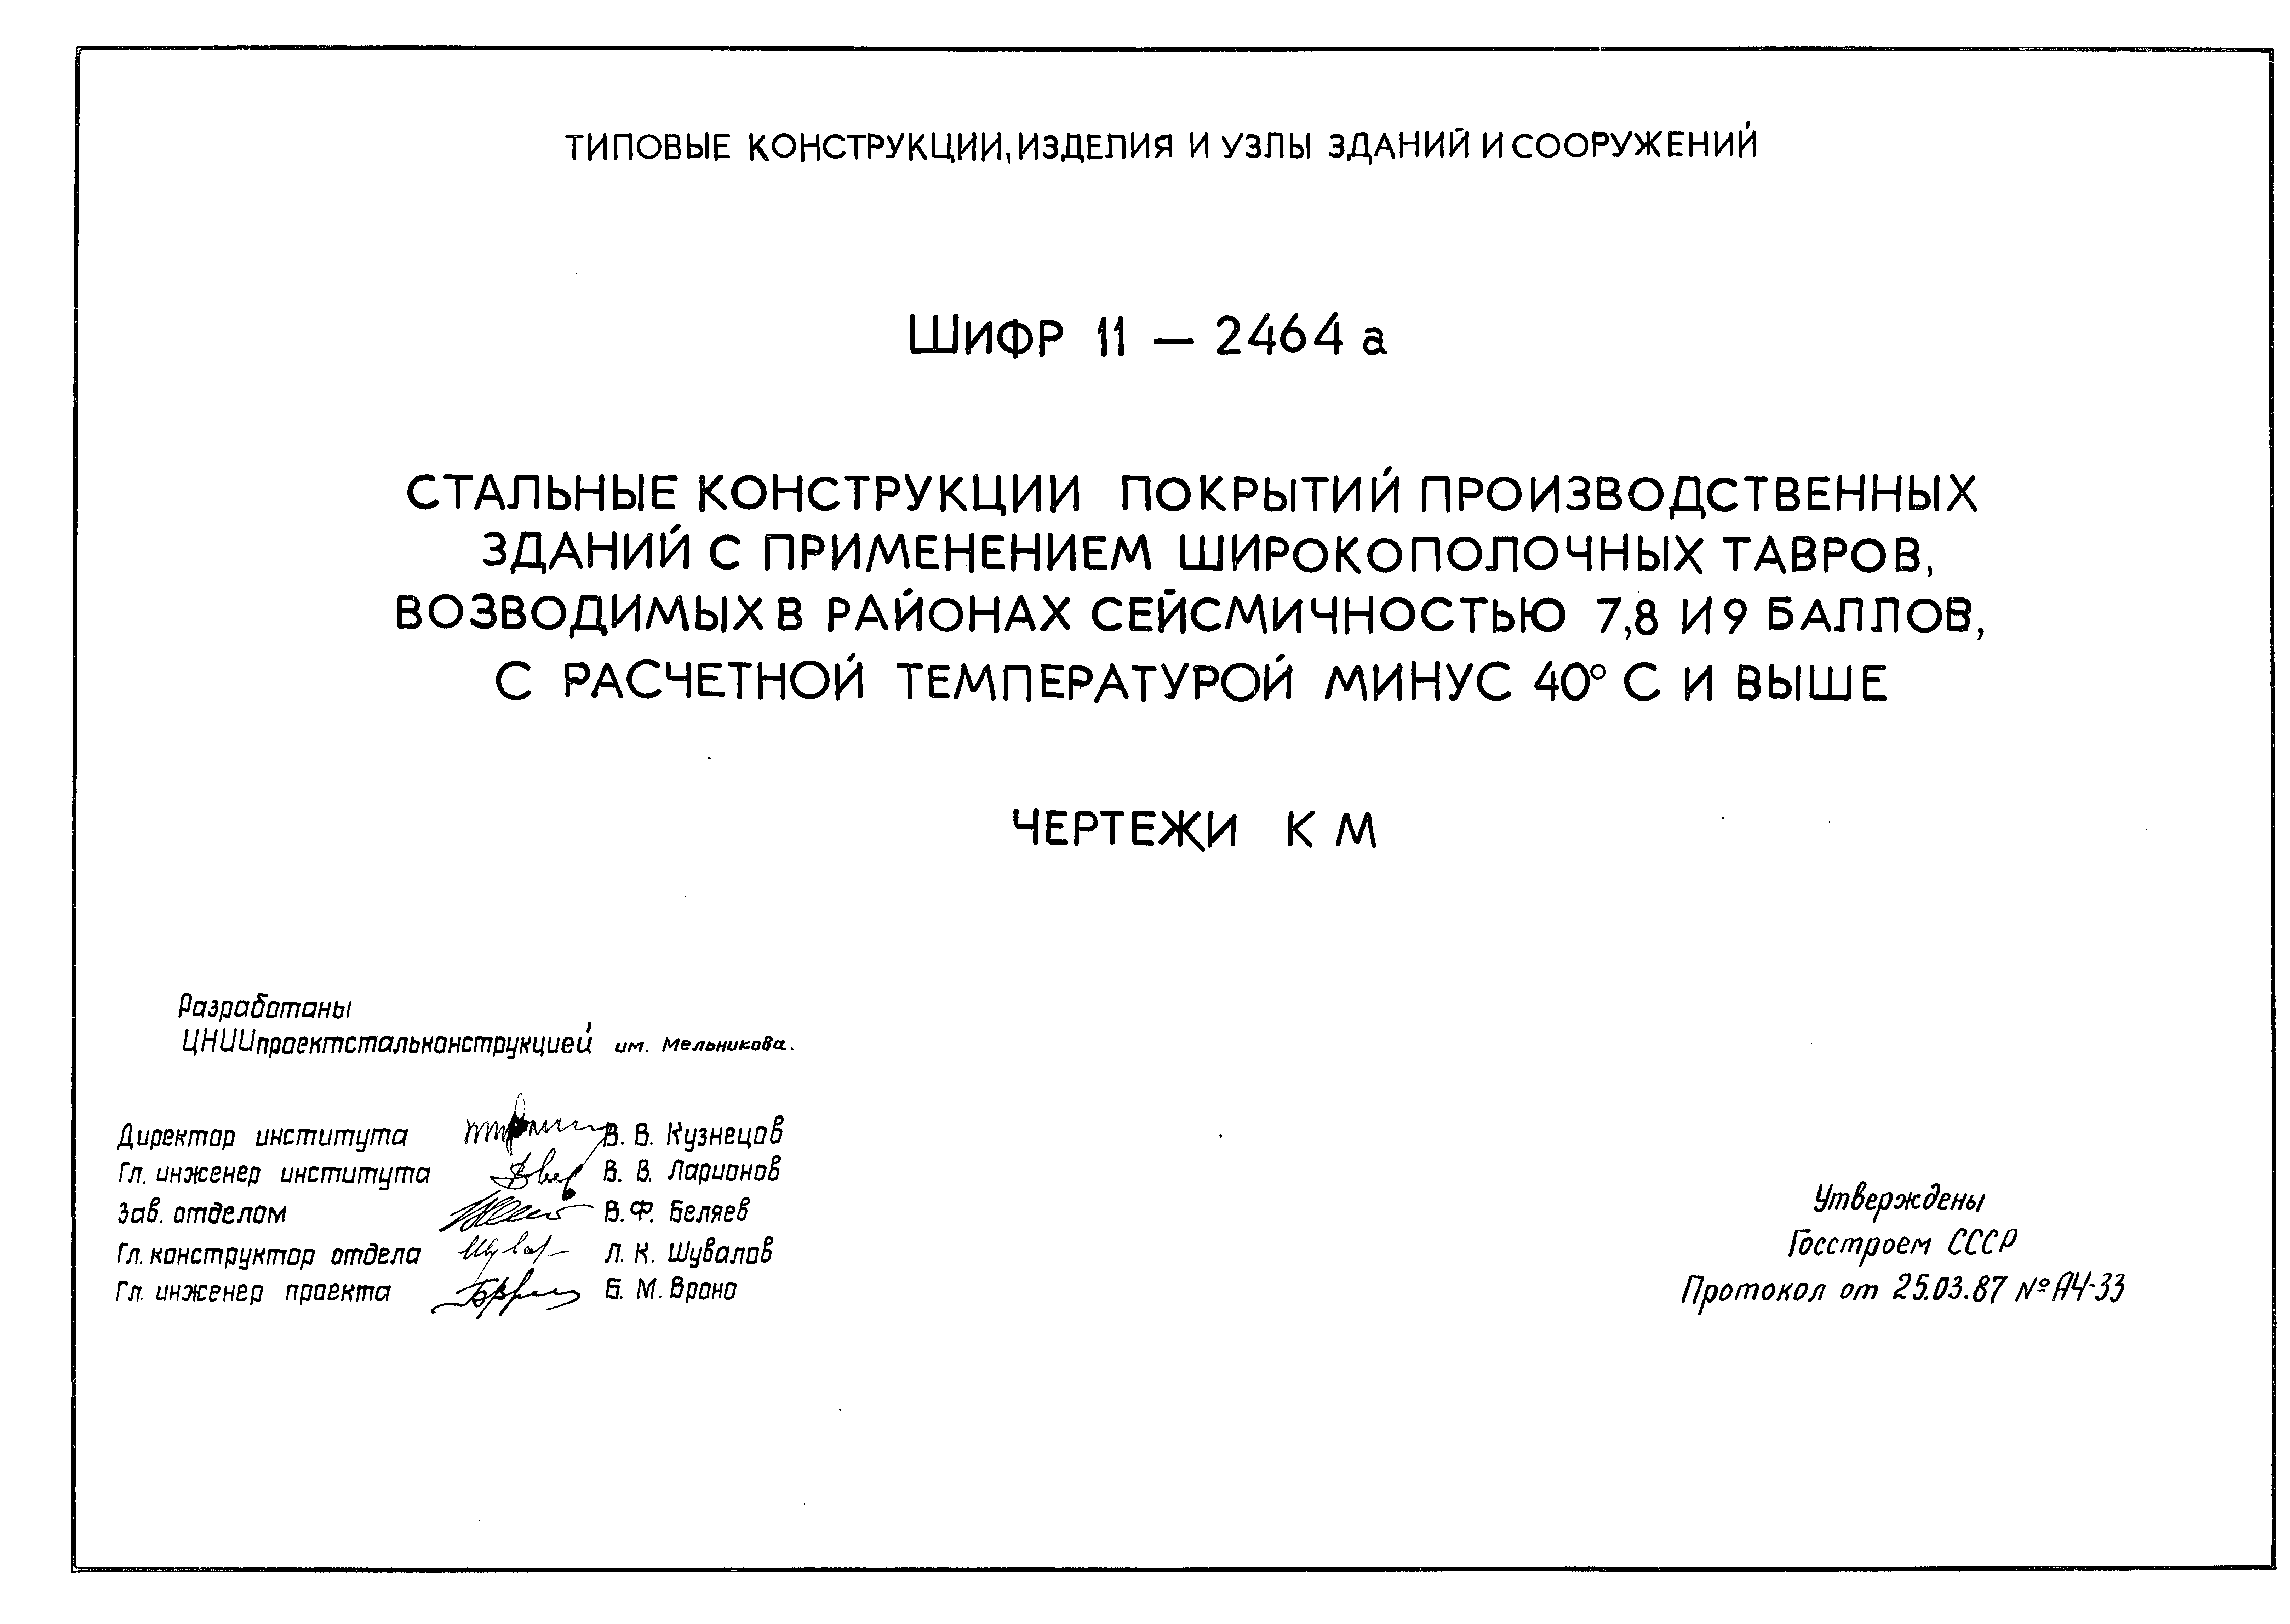 Шифр 11-2464а